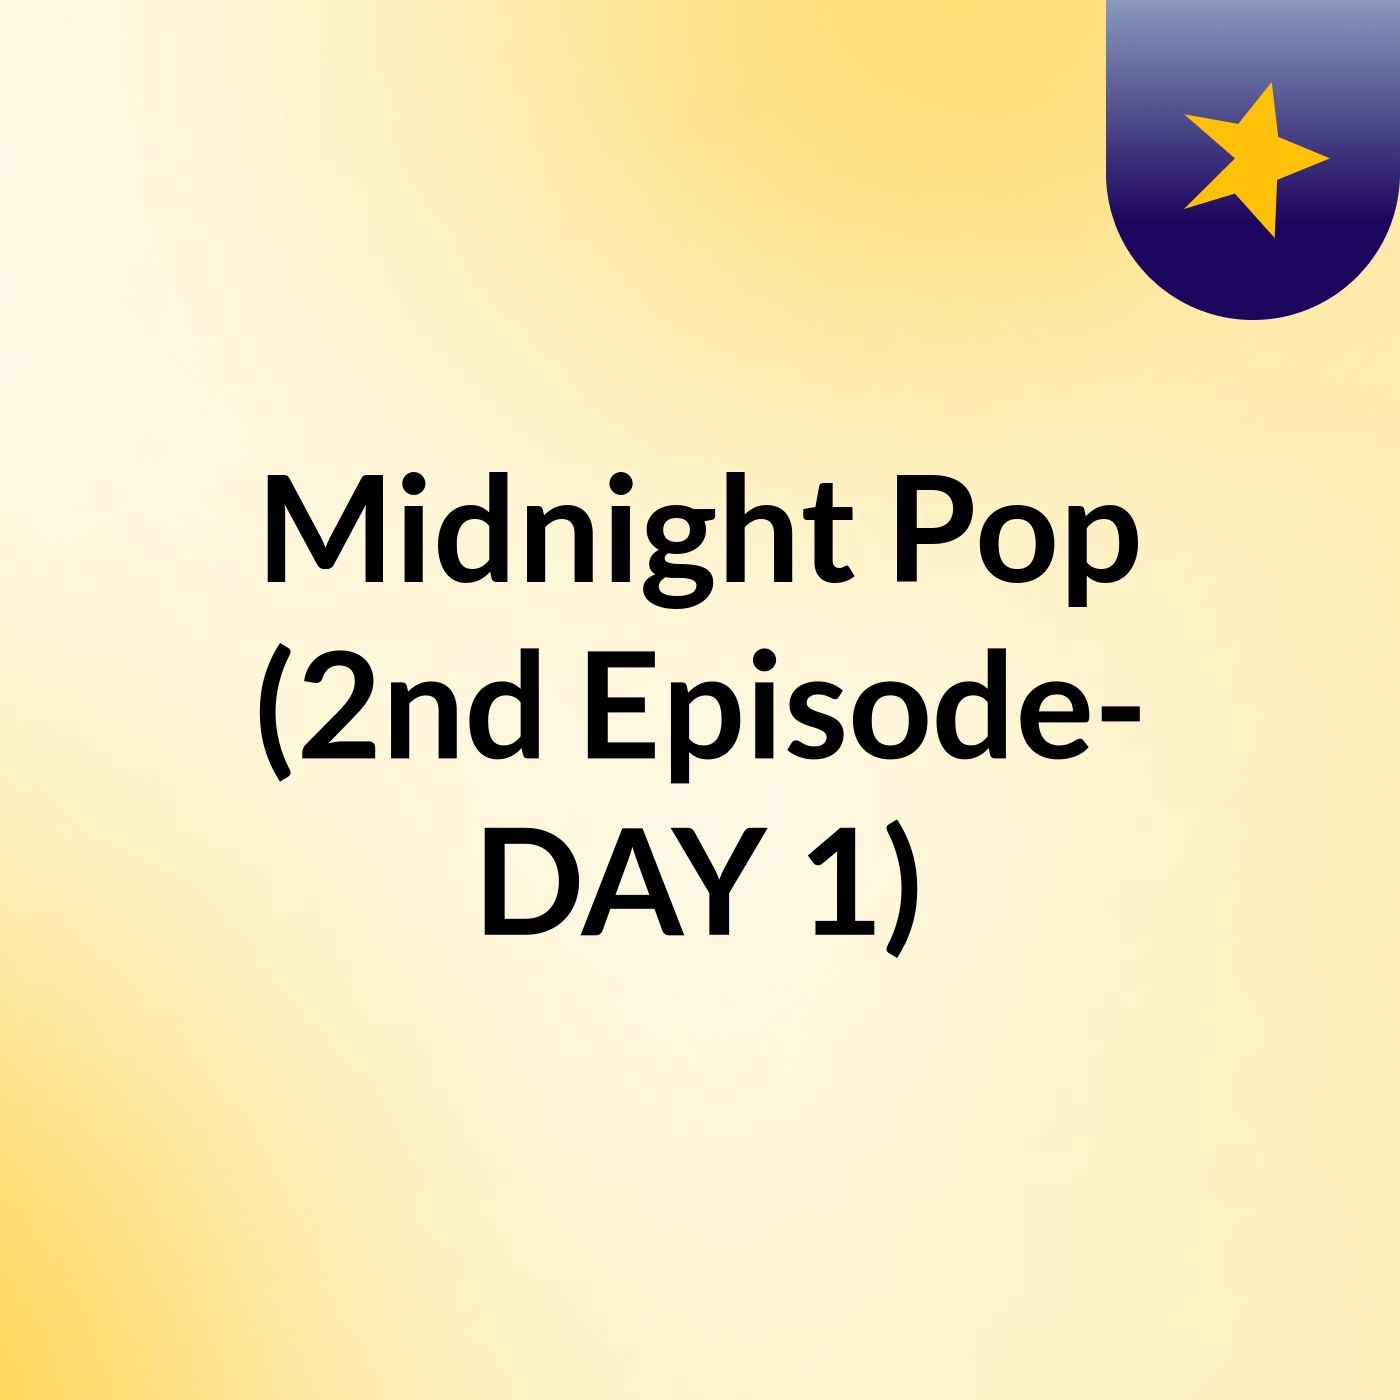 Midnight Pop (2nd Episode- DAY 1)